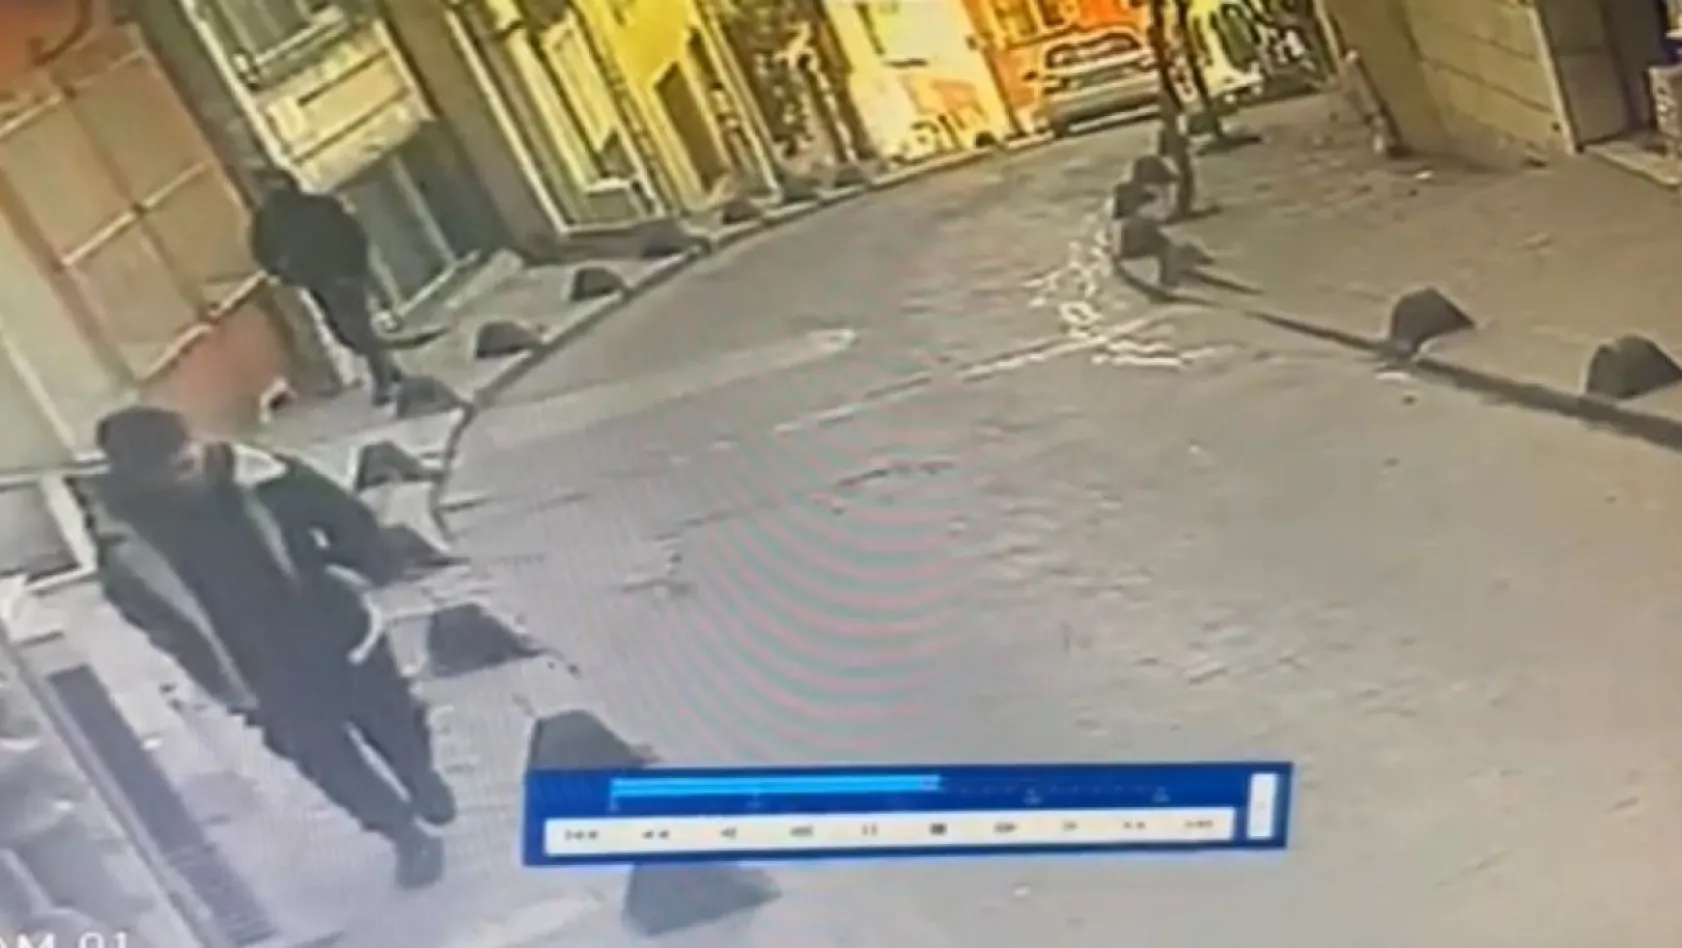 İstanbul'da film gibi olay kamerada: Yanlış adamı vurdu, bayramda el öperken yakalandı